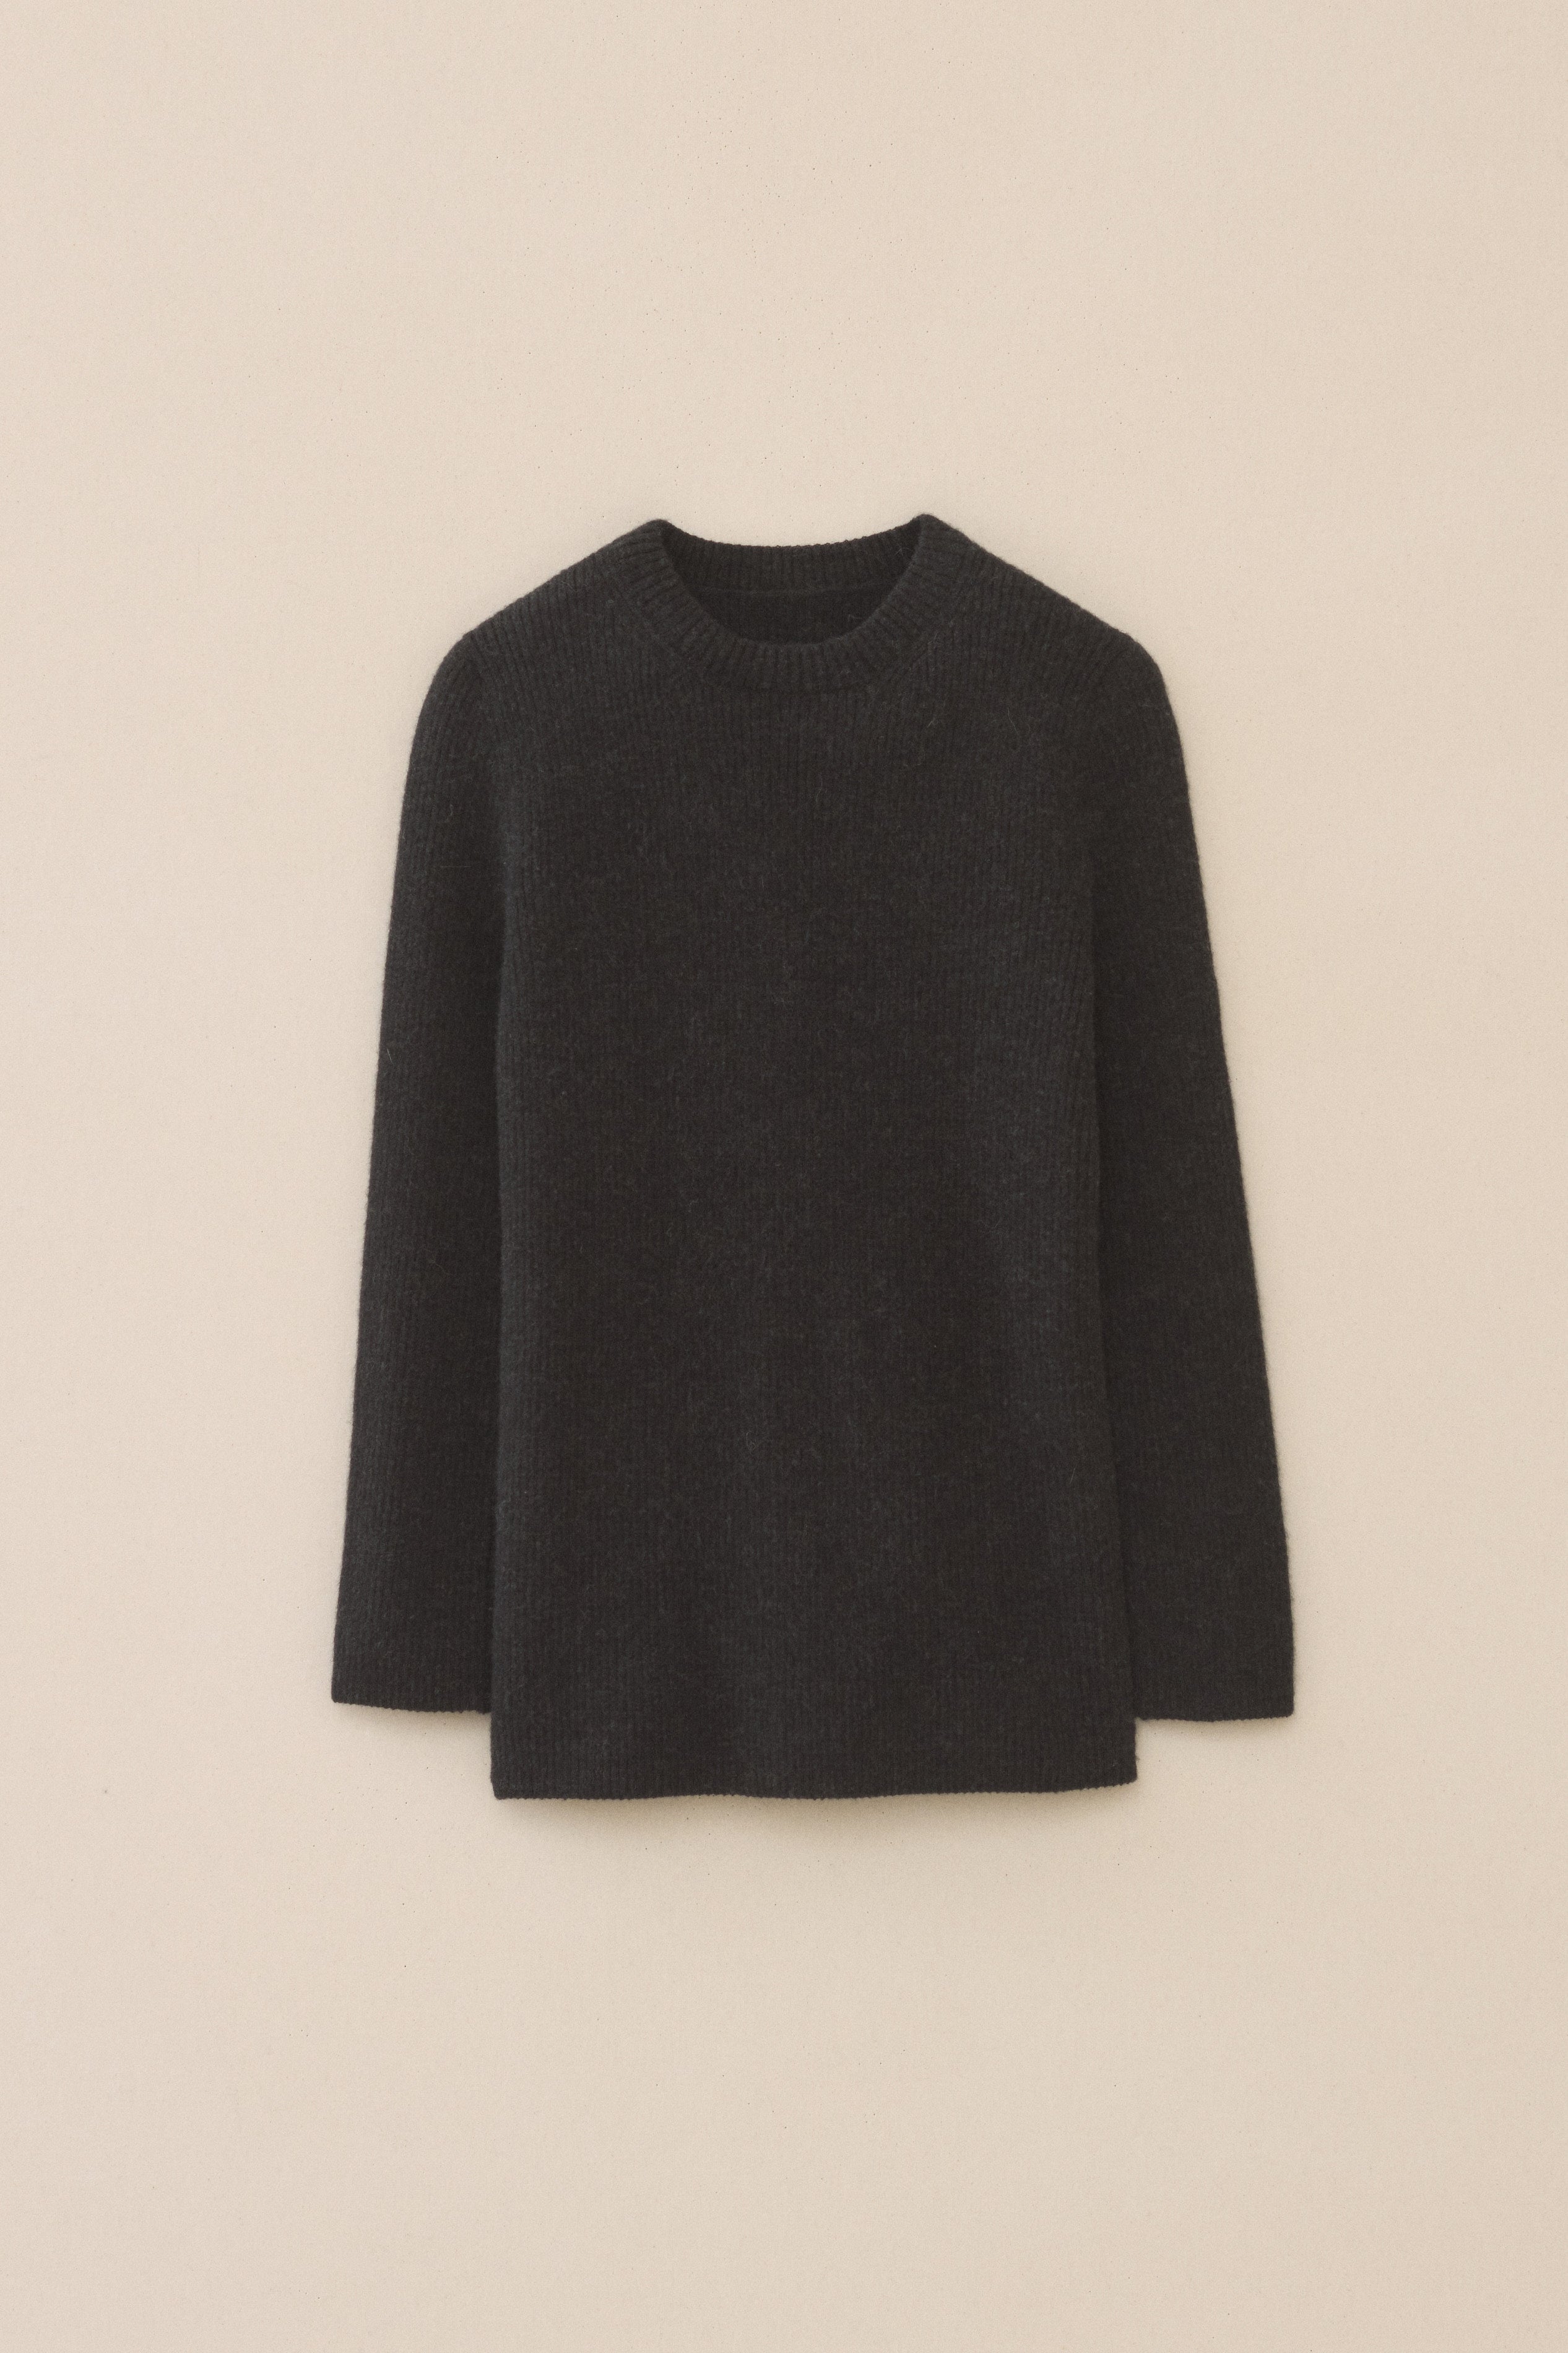 Torrid Black Crewneck 3/4 Sleeve Ribbed Sweater - Depop